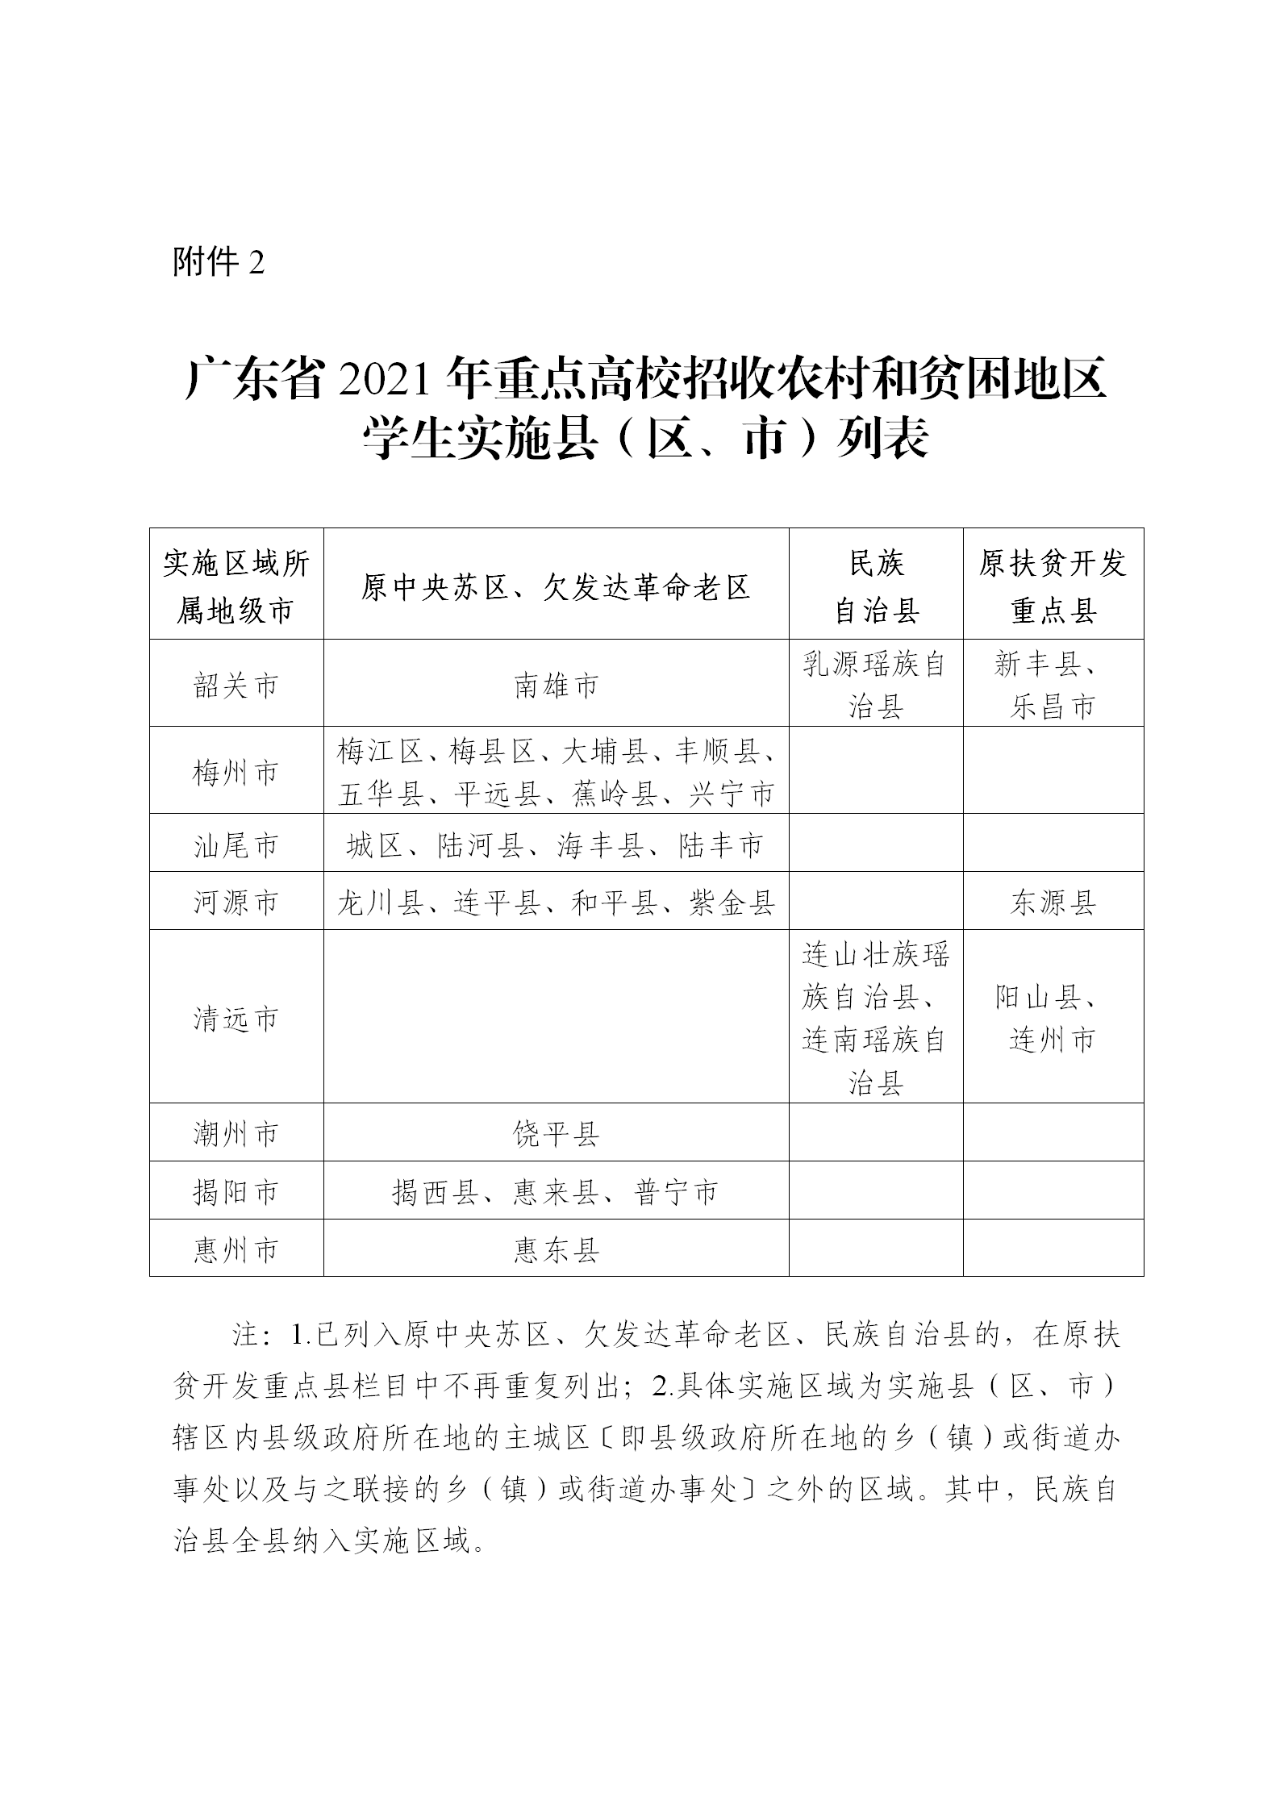 2021年广东省重点高校招收农村和贫困地区学生实施县（区、市）列表